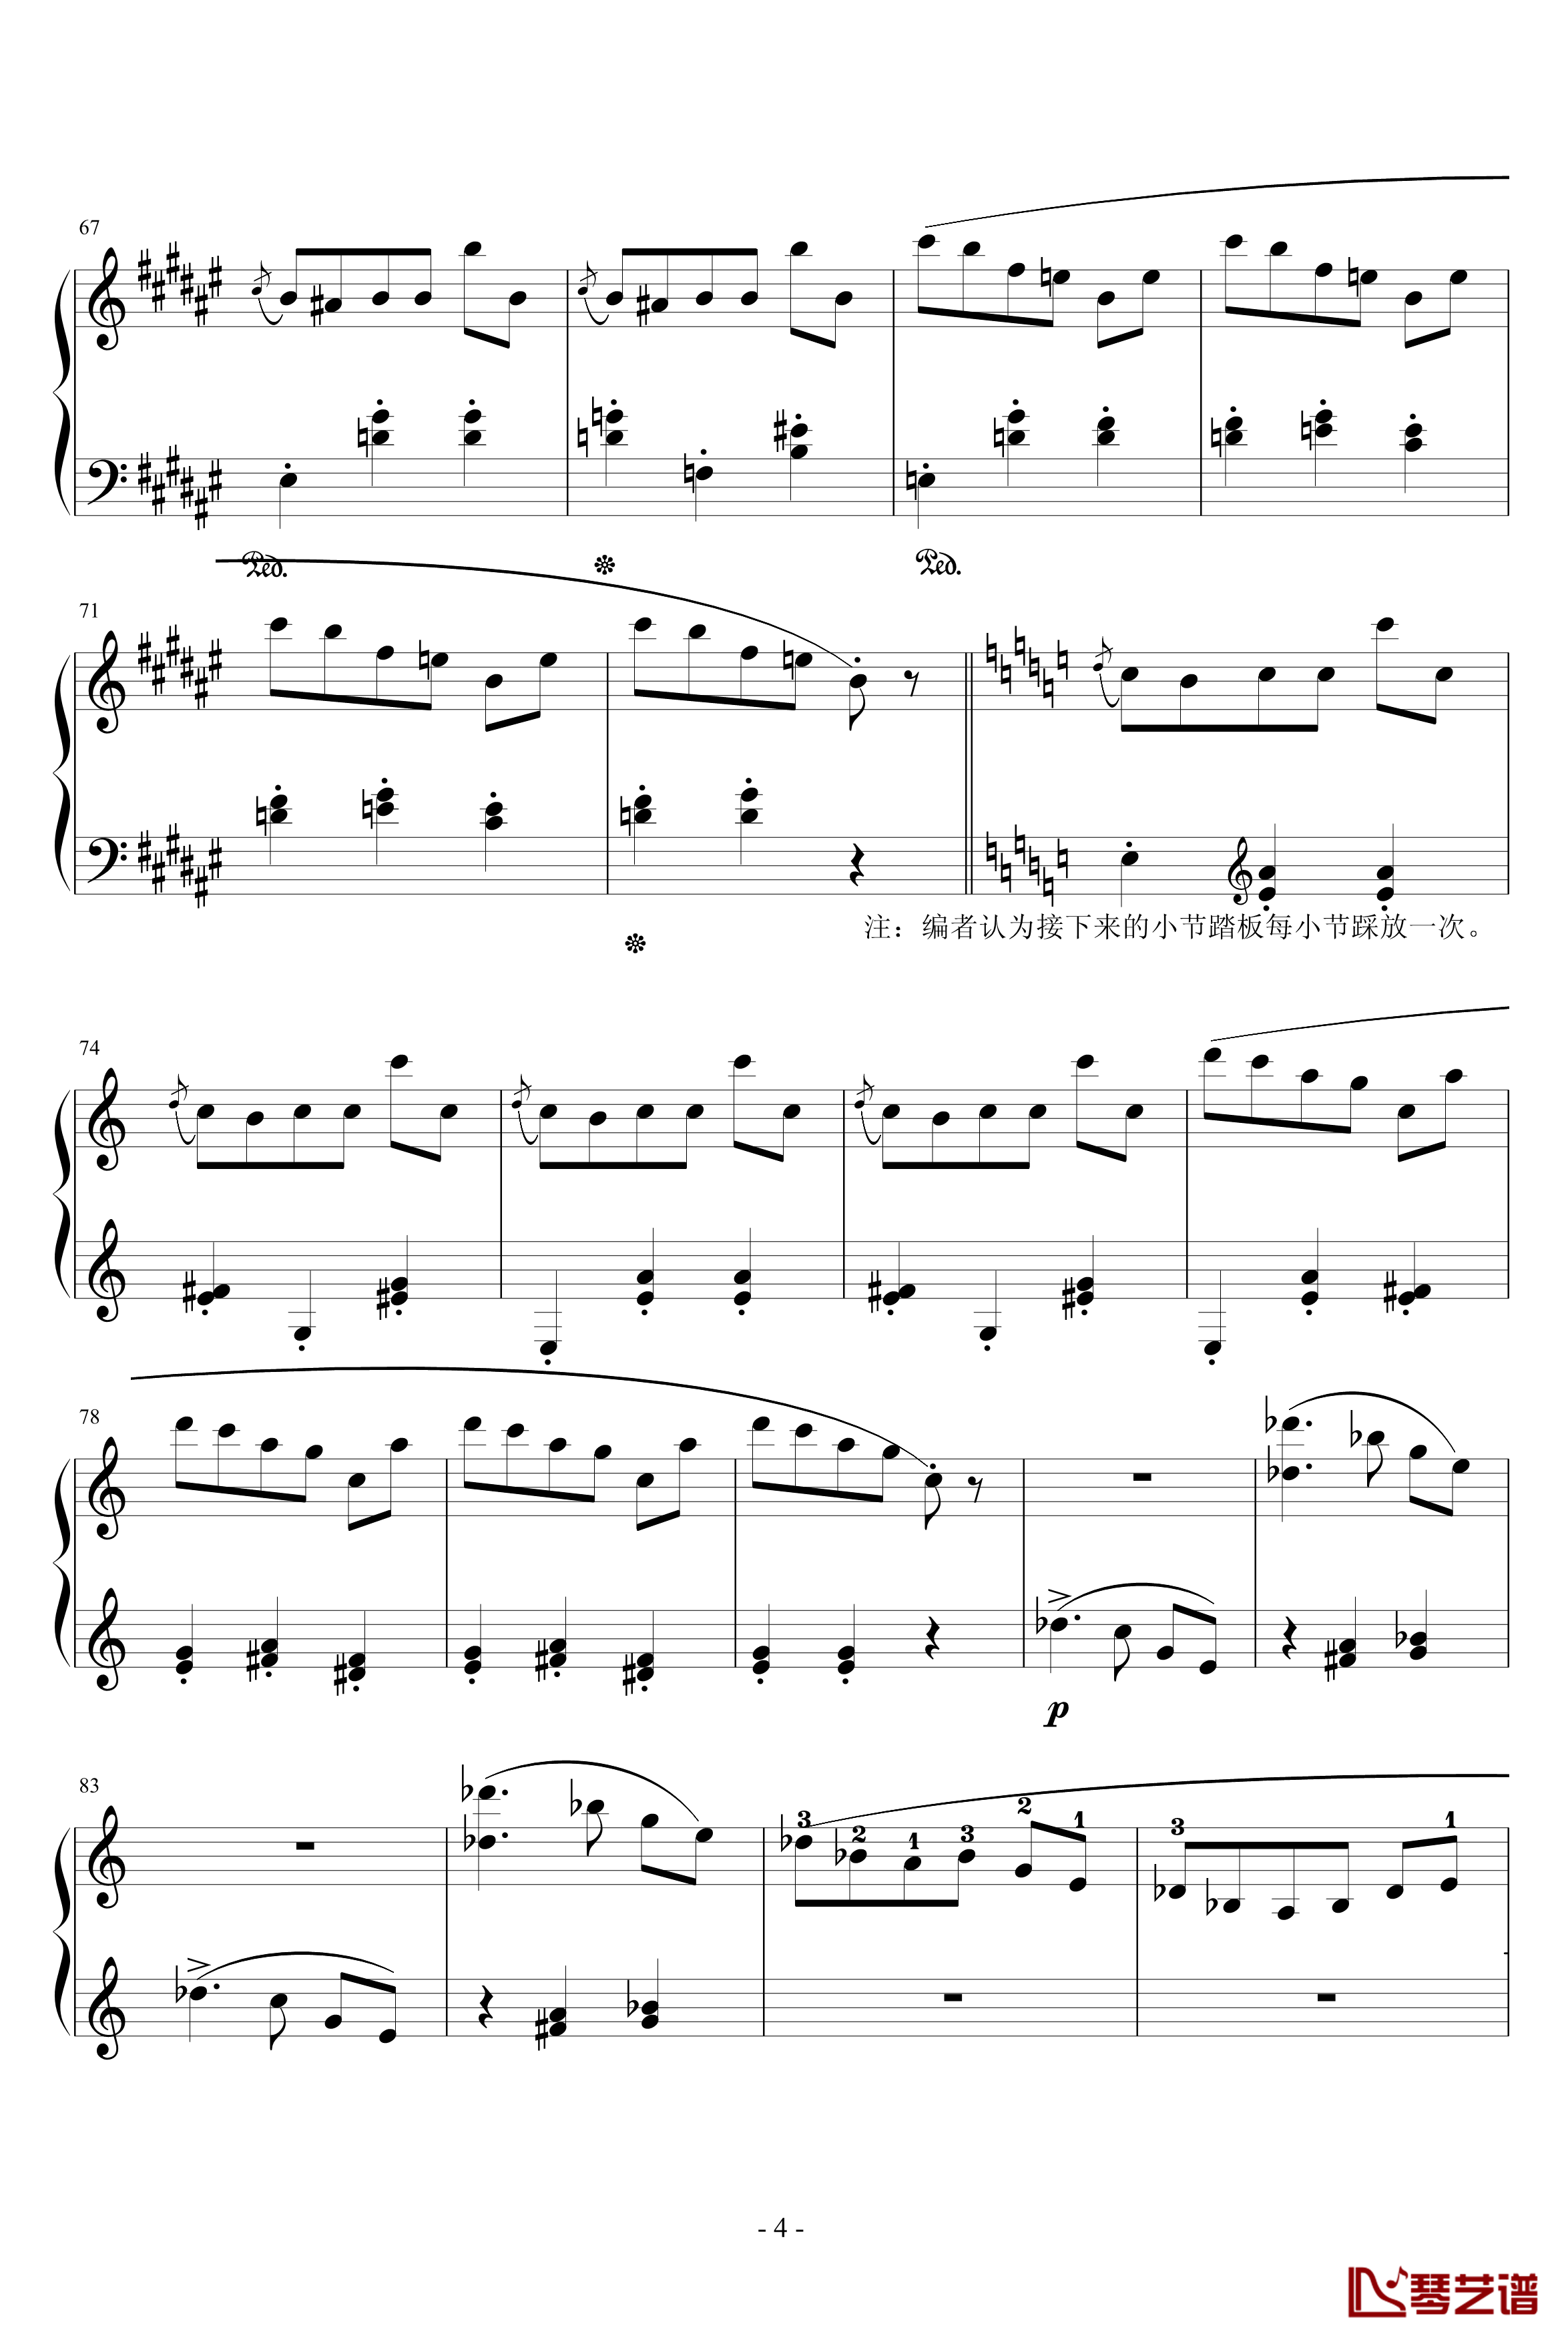 第一首被遗忘的圆舞曲钢琴谱-第一部分-李斯特4